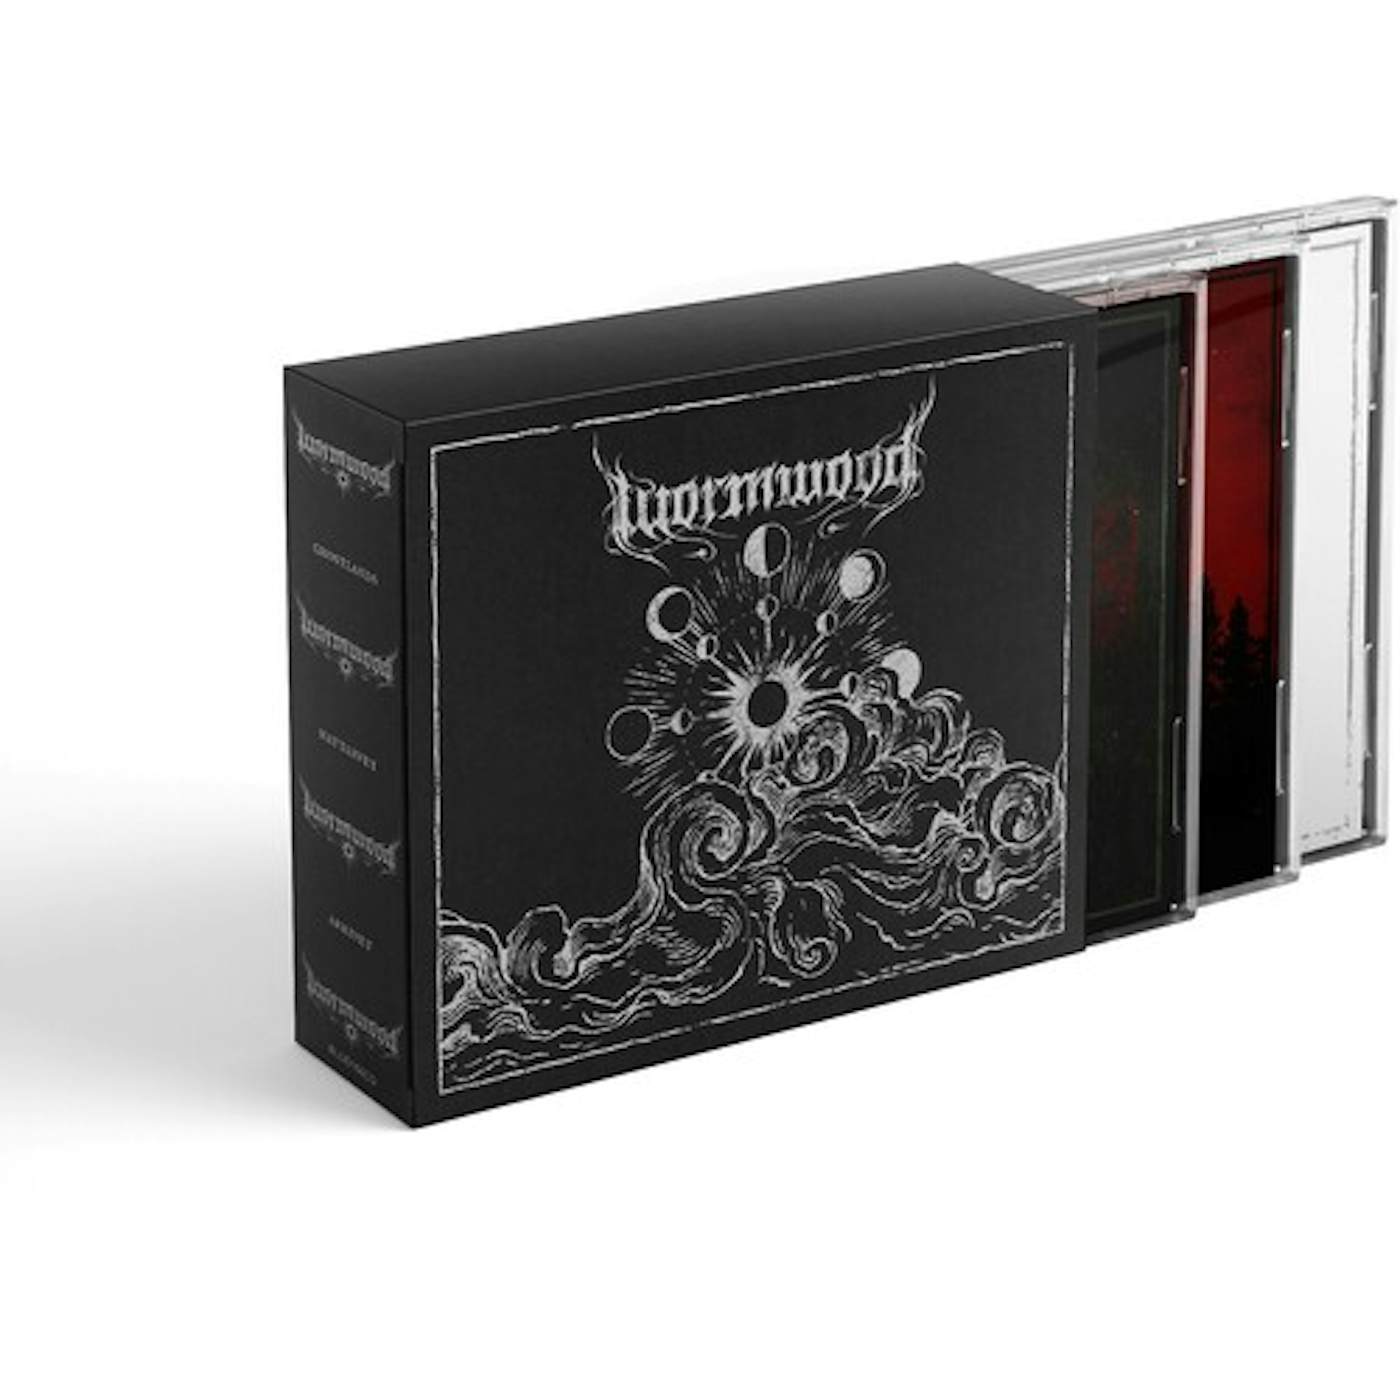 Wormwood 3CD BOX (GHOSTLANDS NATTARVET & ARKIVET)